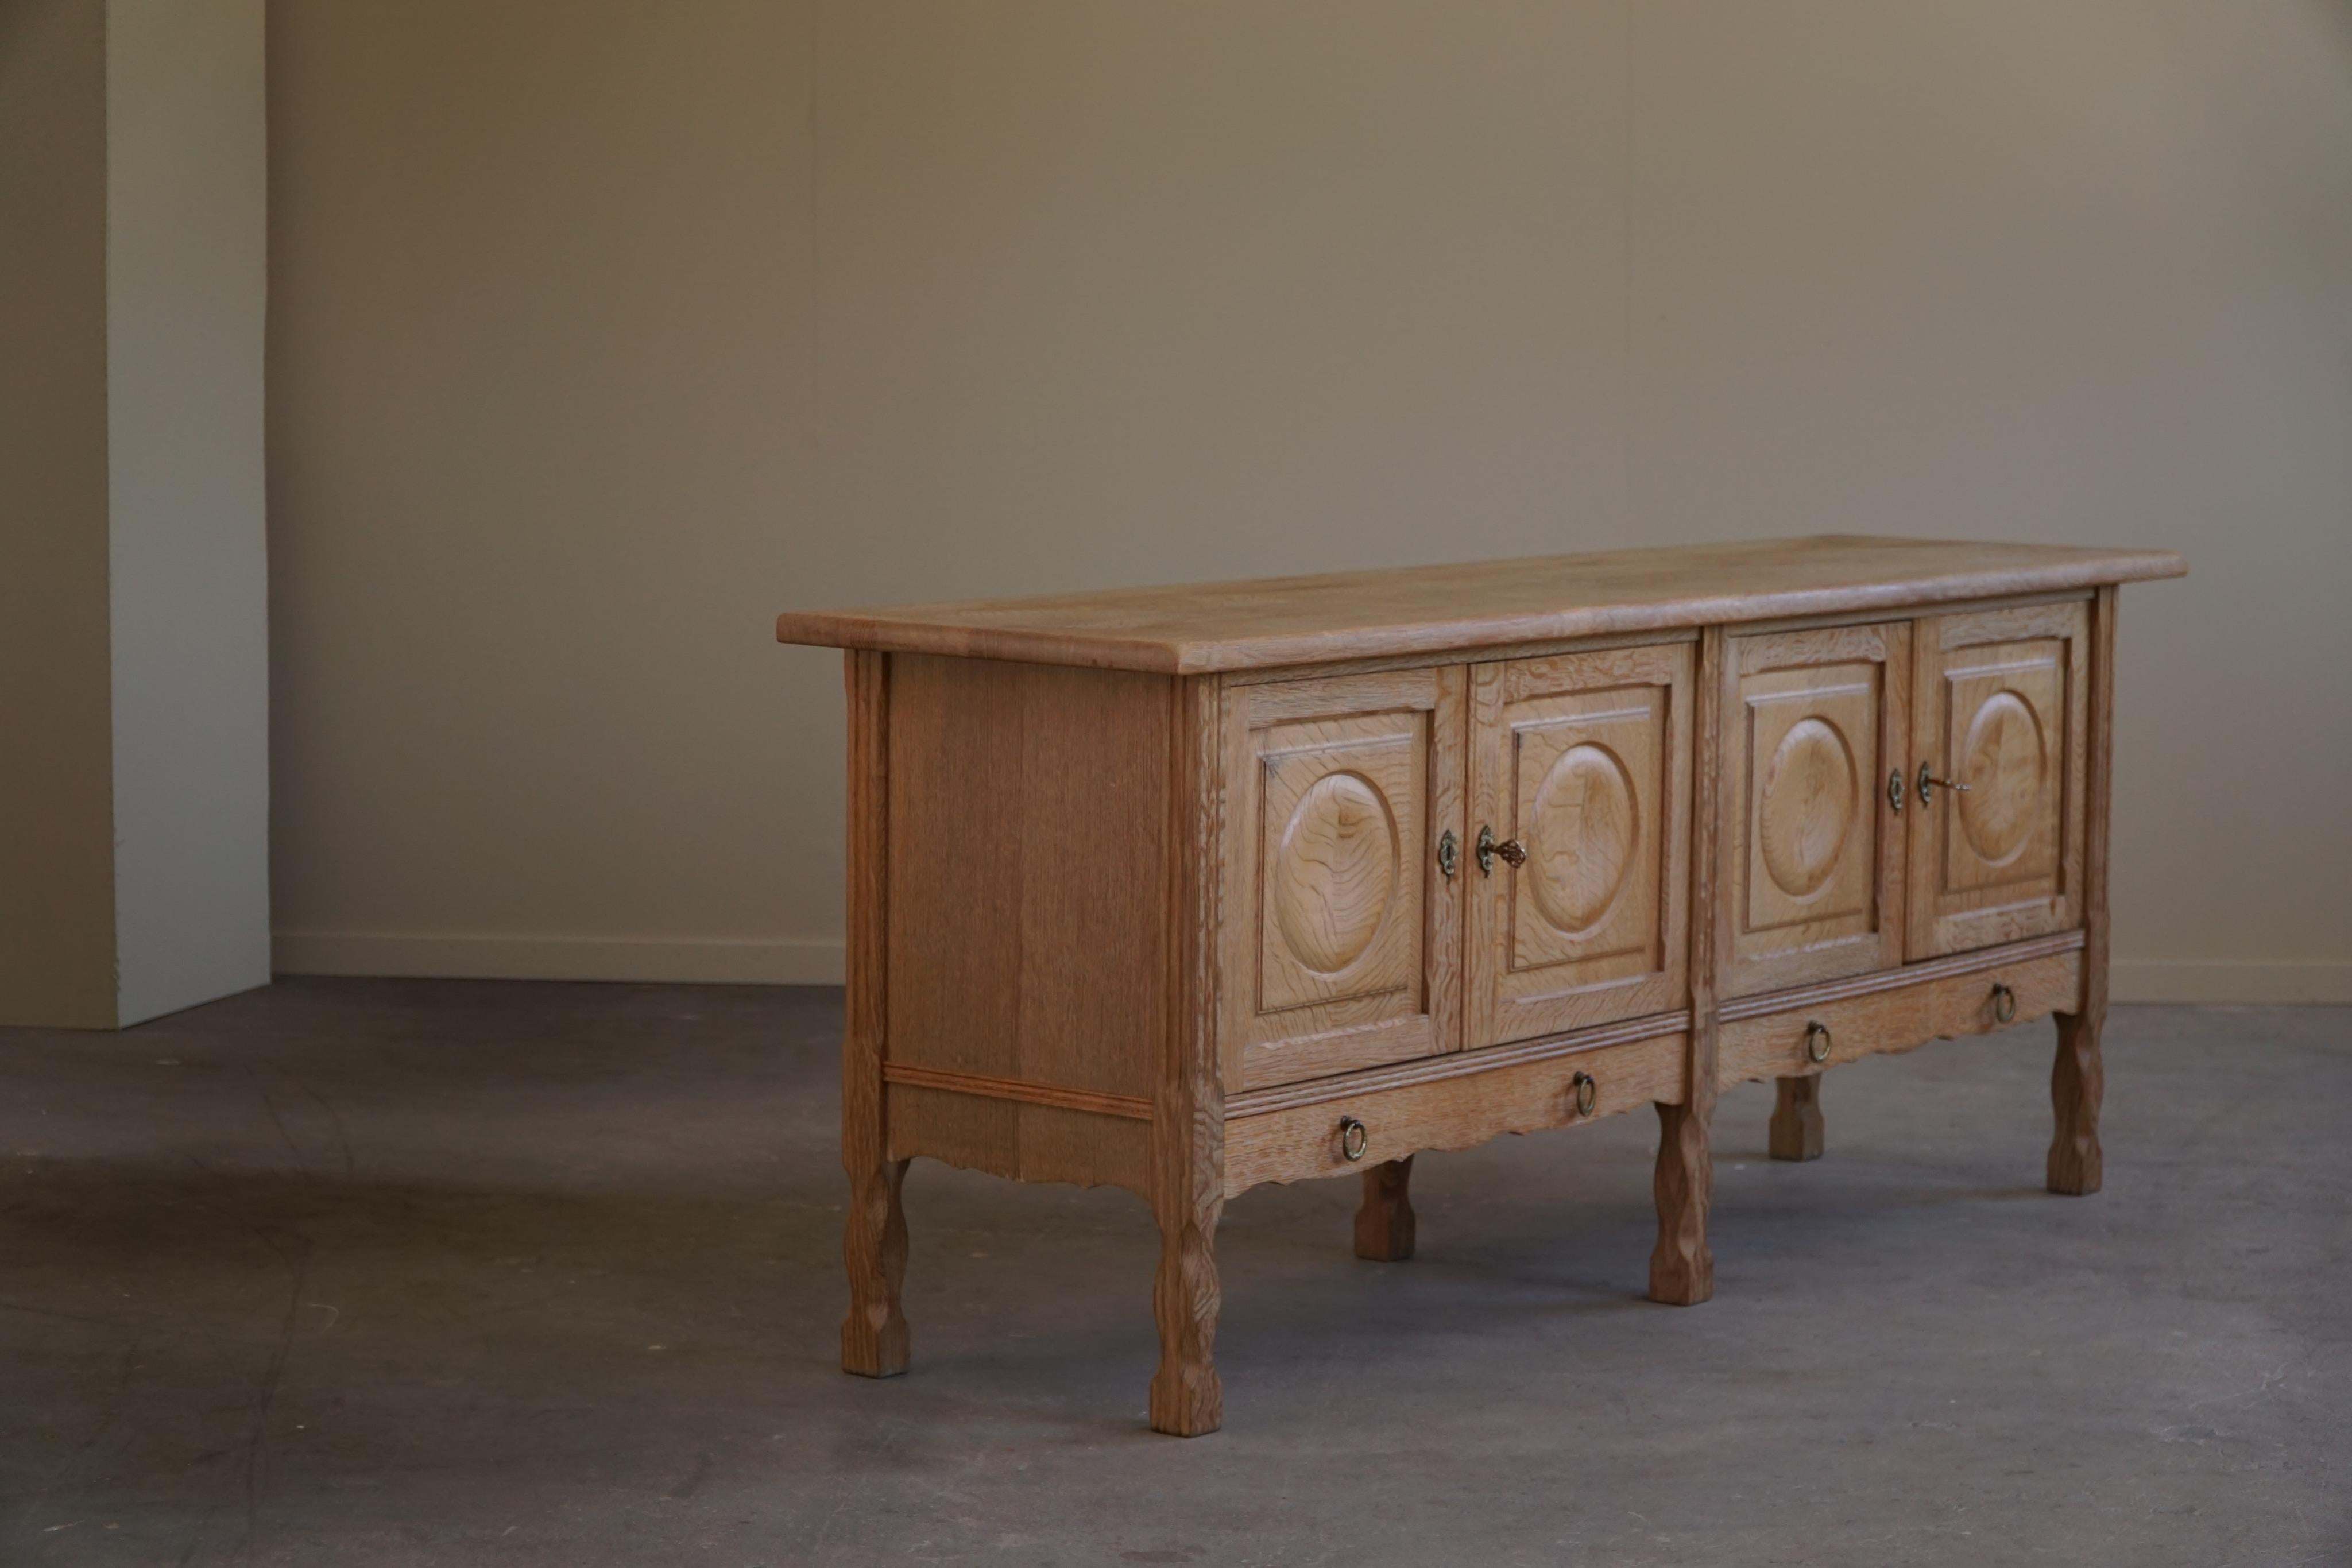 Scandinavian Modern Cabinet in Oak, Midcentury, Made by a Danish Cabinetmaker, Brutalist, 1960s